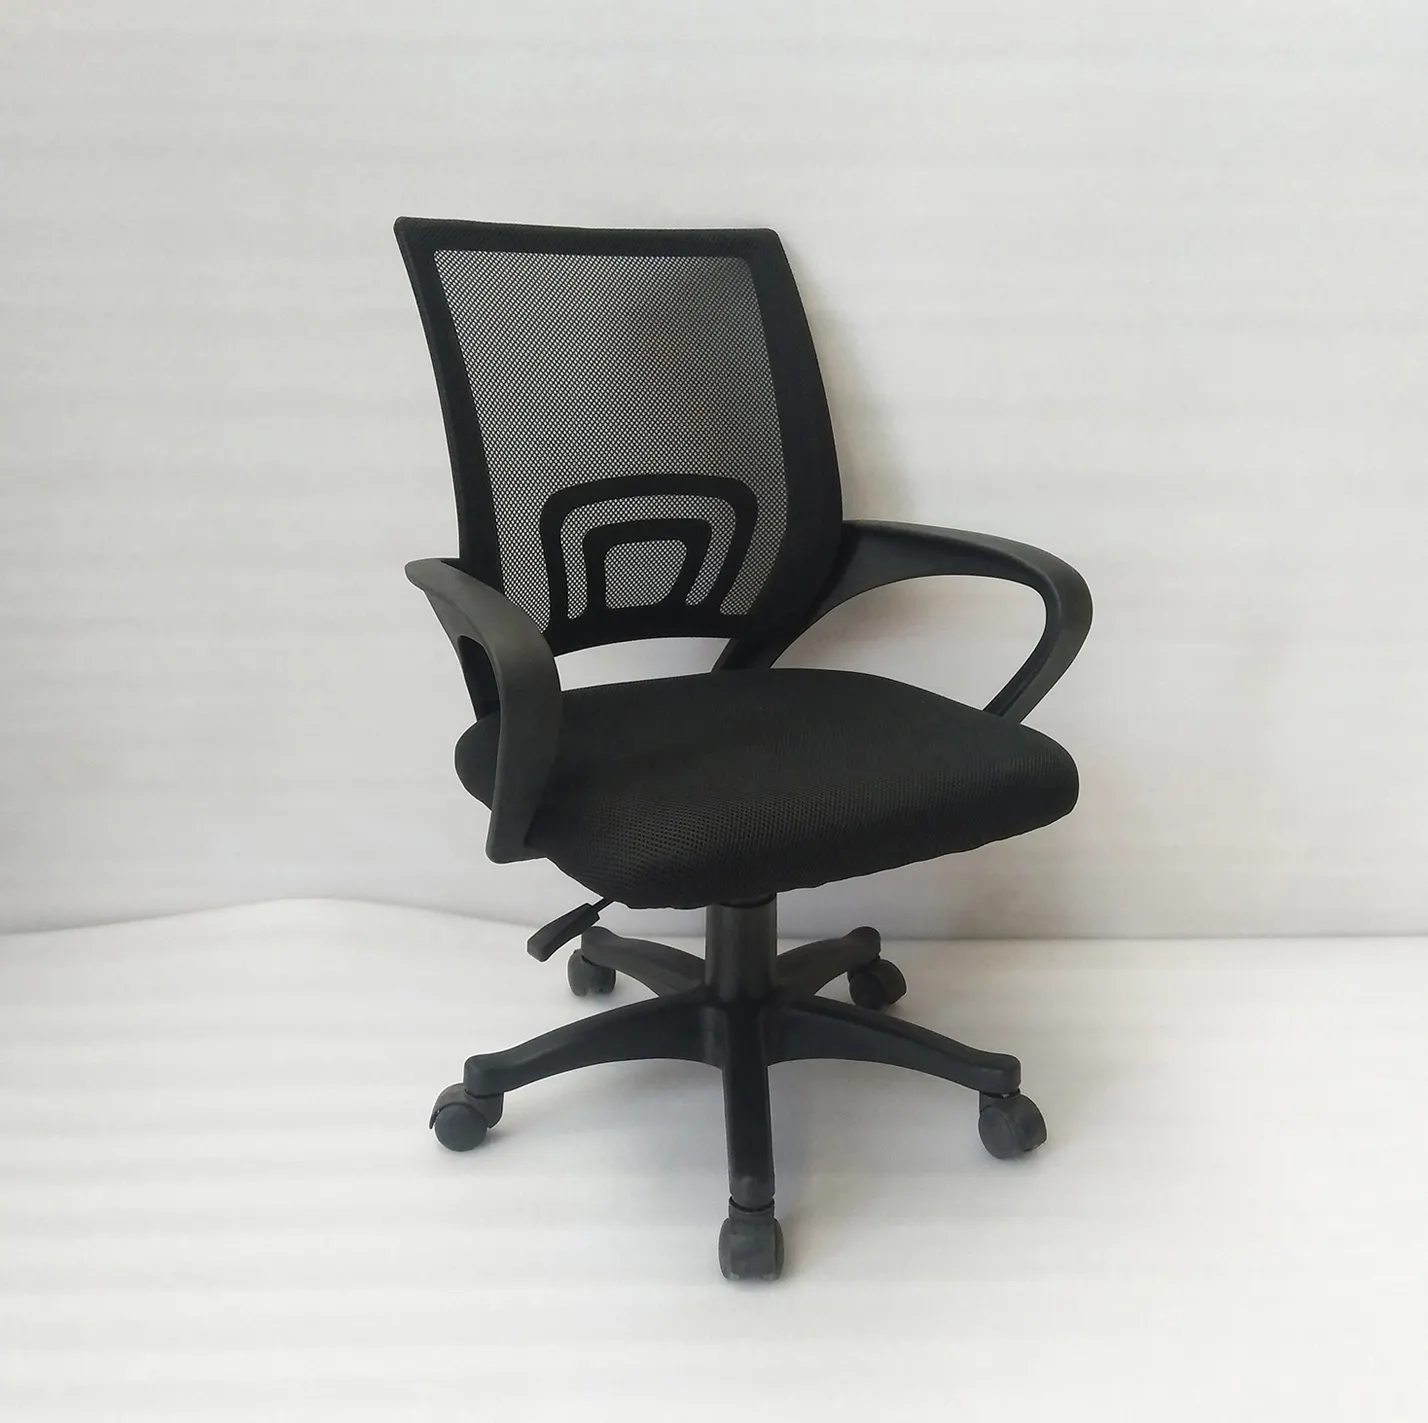 كرسي مريح من علي بابا بتصميمات لدعم القطنيات كراسي للمكاتب والعملاء